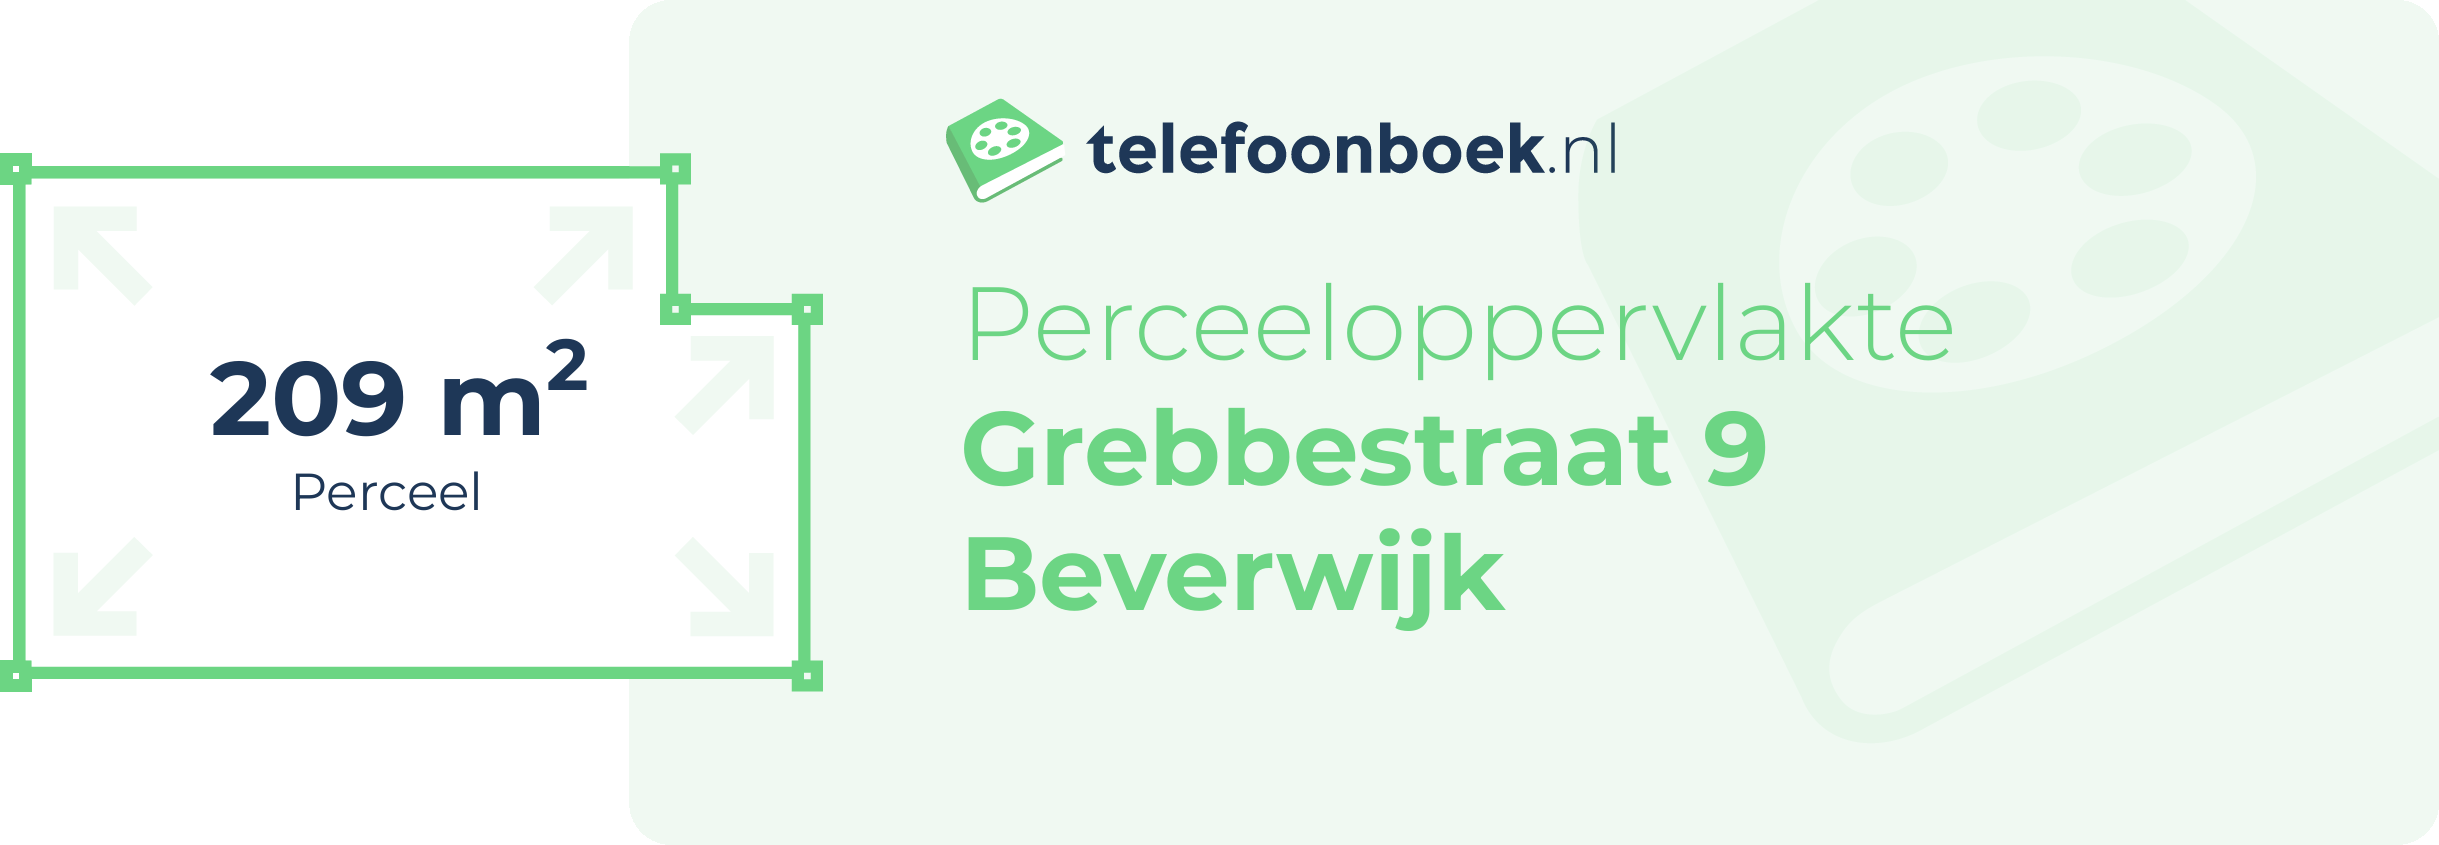 Perceeloppervlakte Grebbestraat 9 Beverwijk